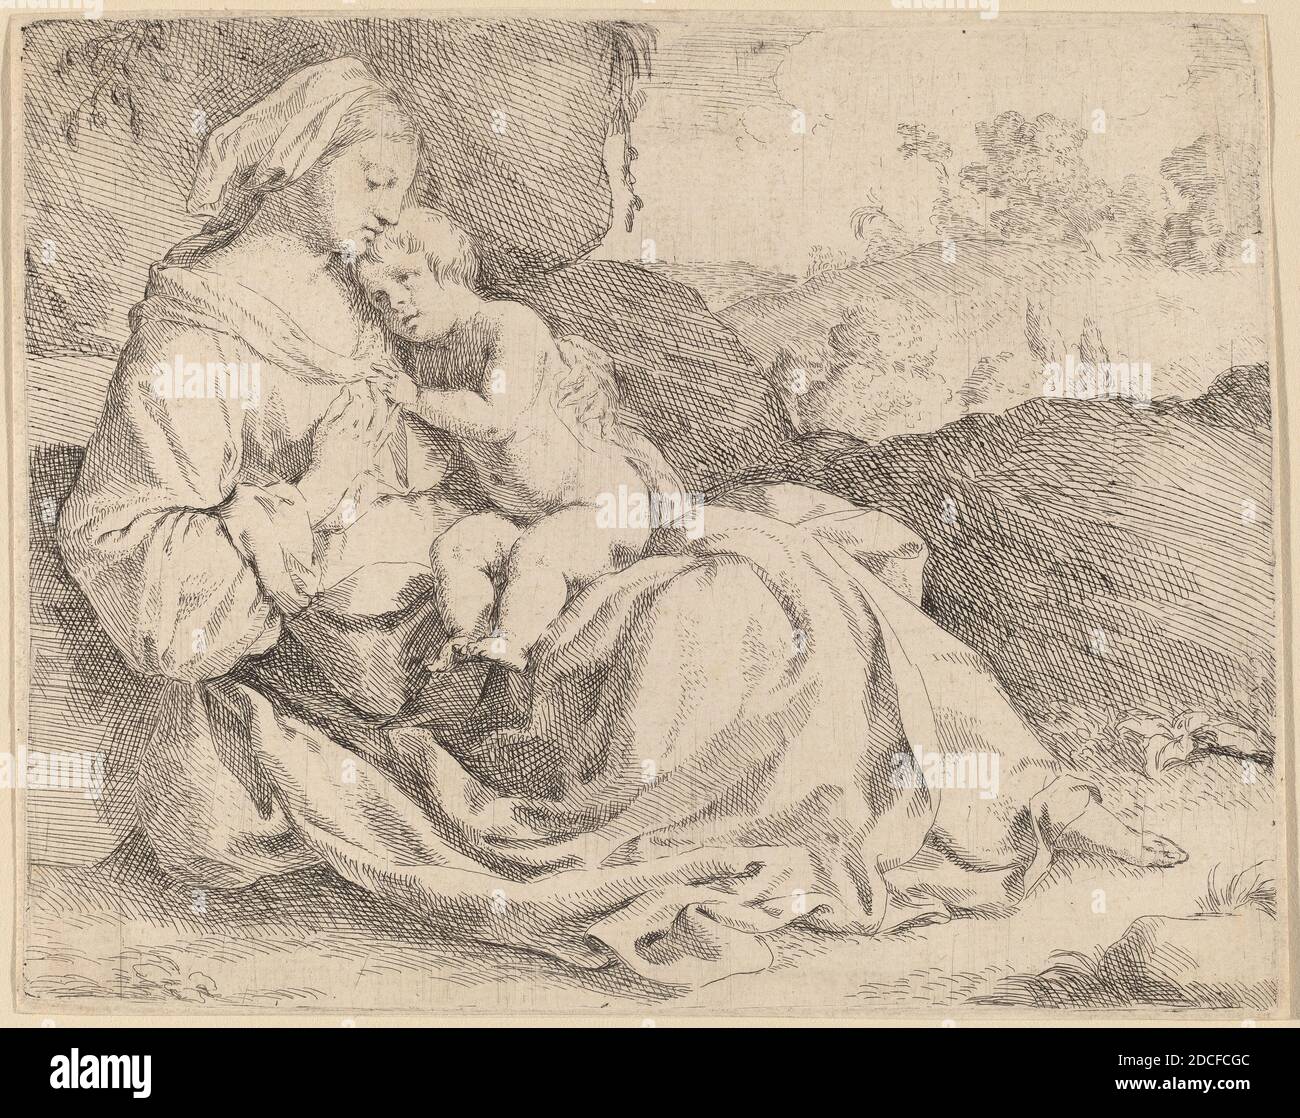 C 1599 immagini e fotografie stock ad alta risoluzione - Alamy